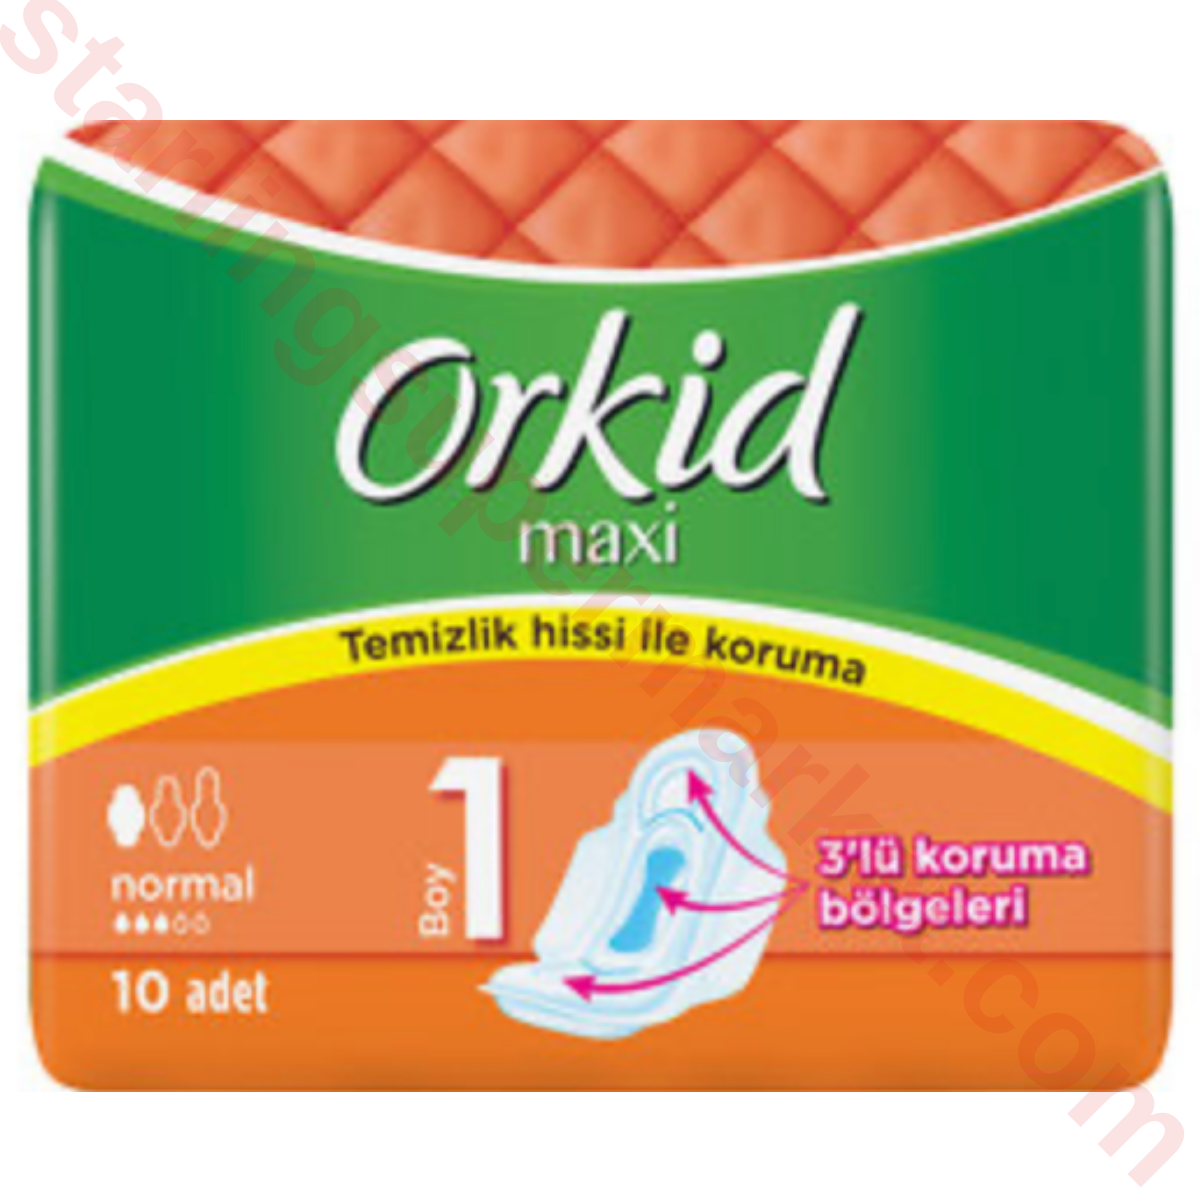 ORKID MAXI NORMAL TEKLI PAKET 10 LU